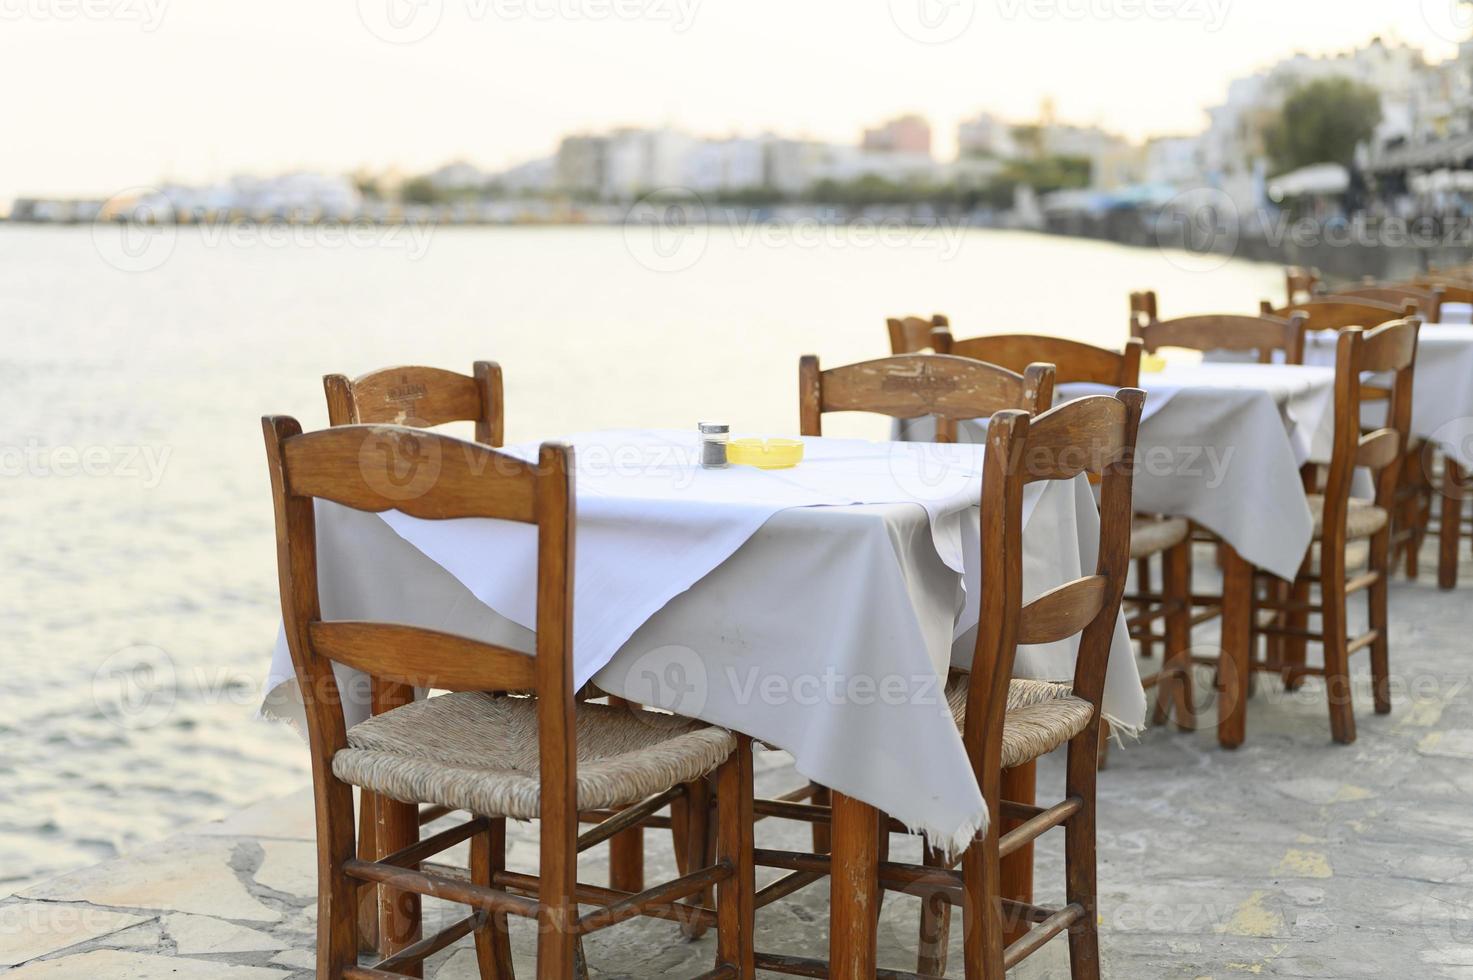 mesas de café no dique do mar mediterrâneo foto